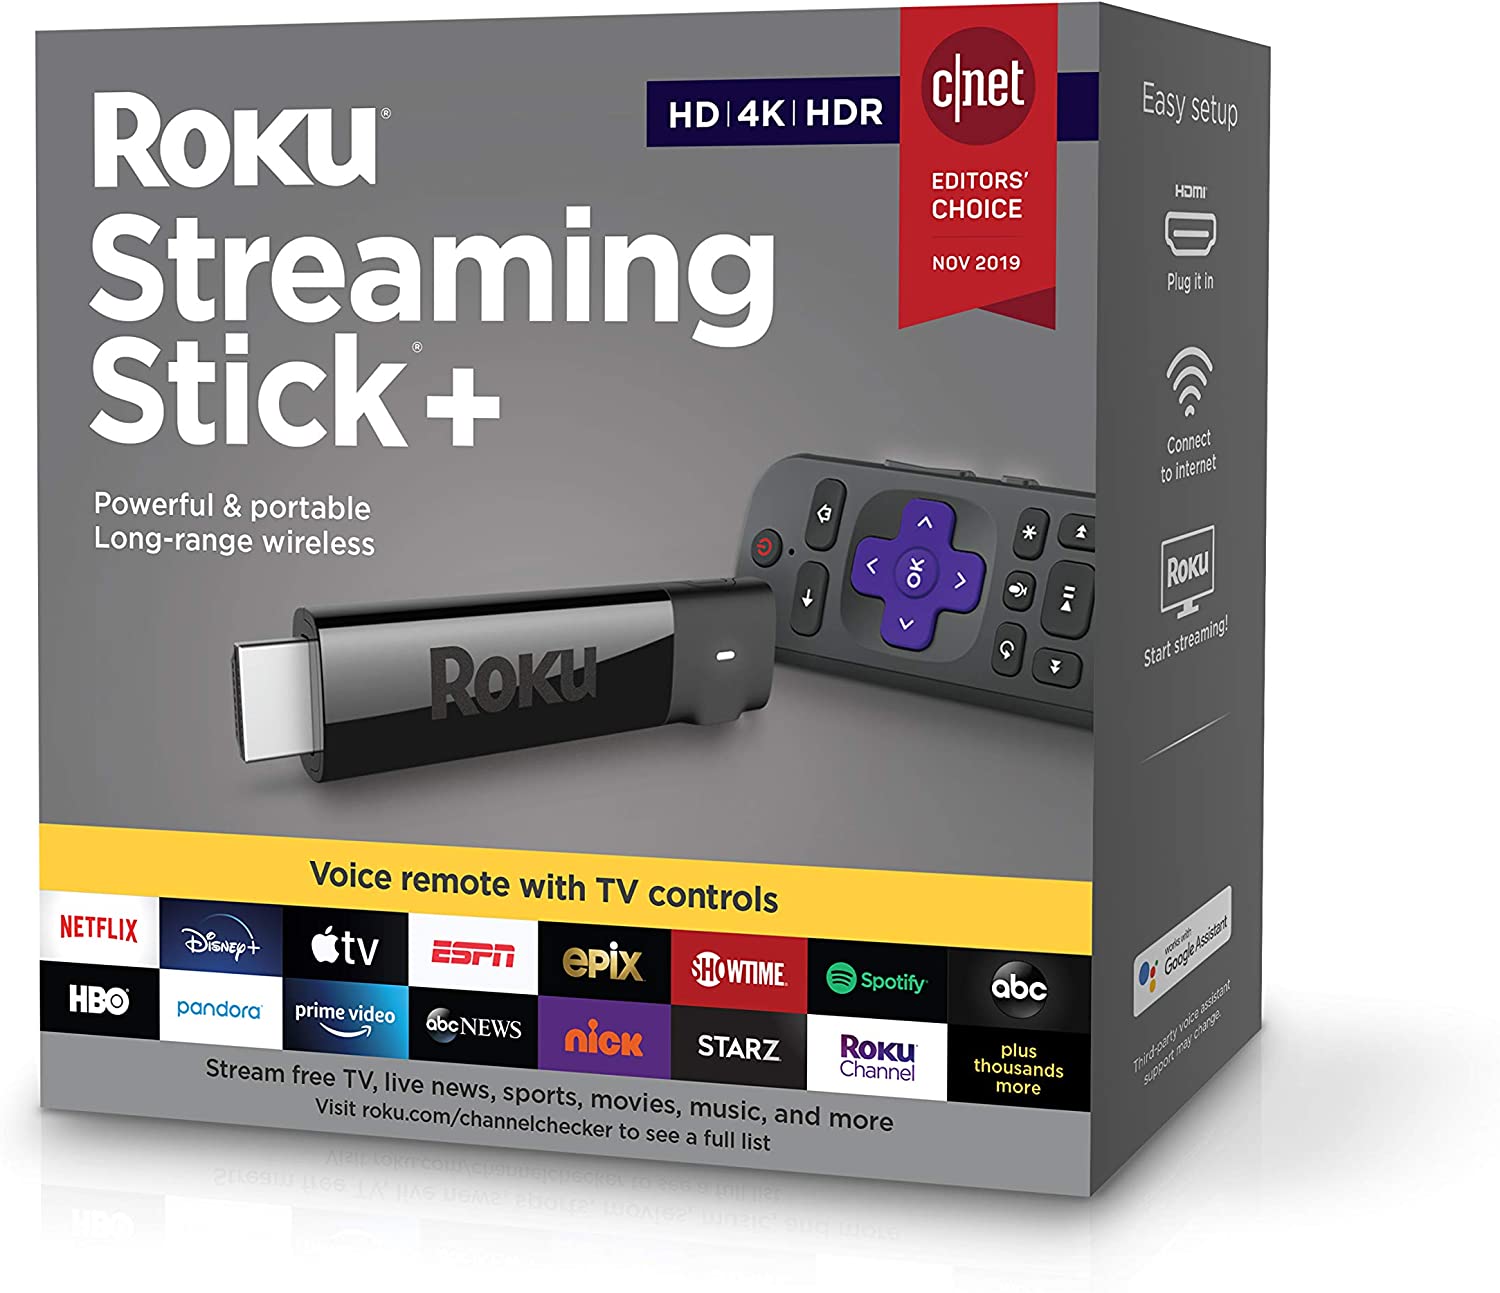 Roku Streaming Stick+ (HD/4K/HDR)